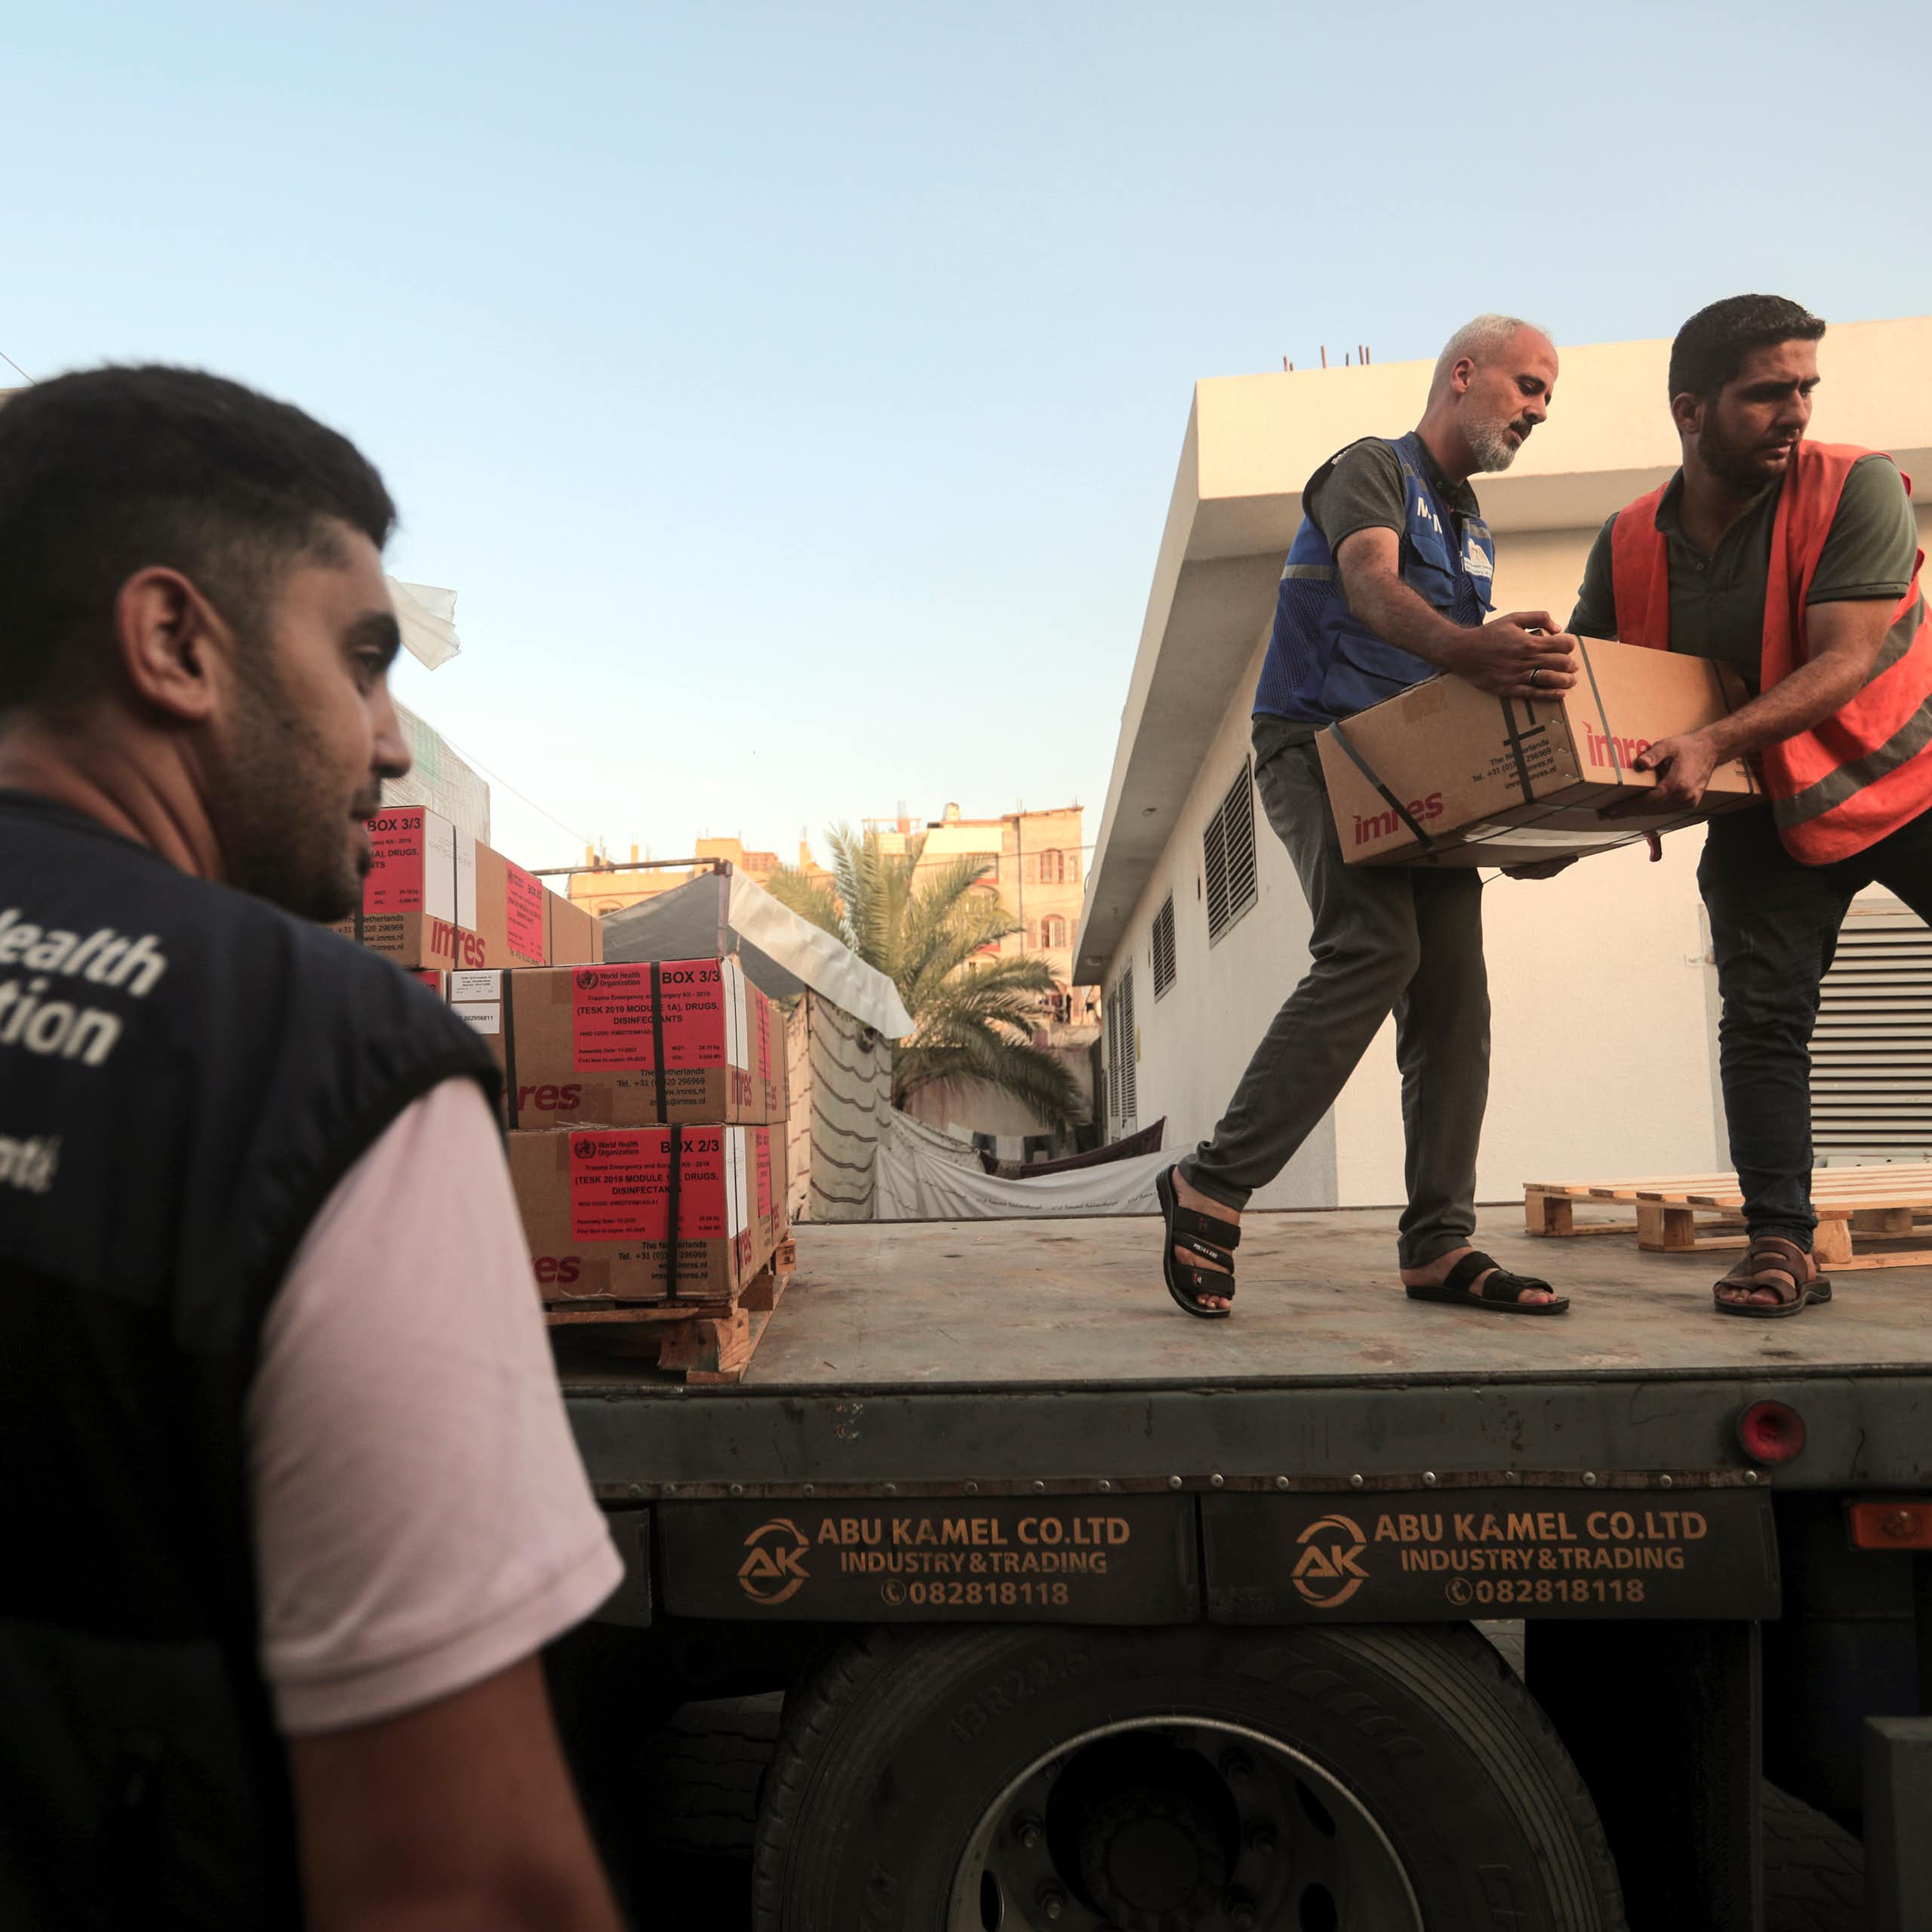 Deux hommes transportent des cartons depuis un camion, tandis qu'un troisième se tient sur le côté. Il porte un gilet de l'Organisation mondiale de la santé.